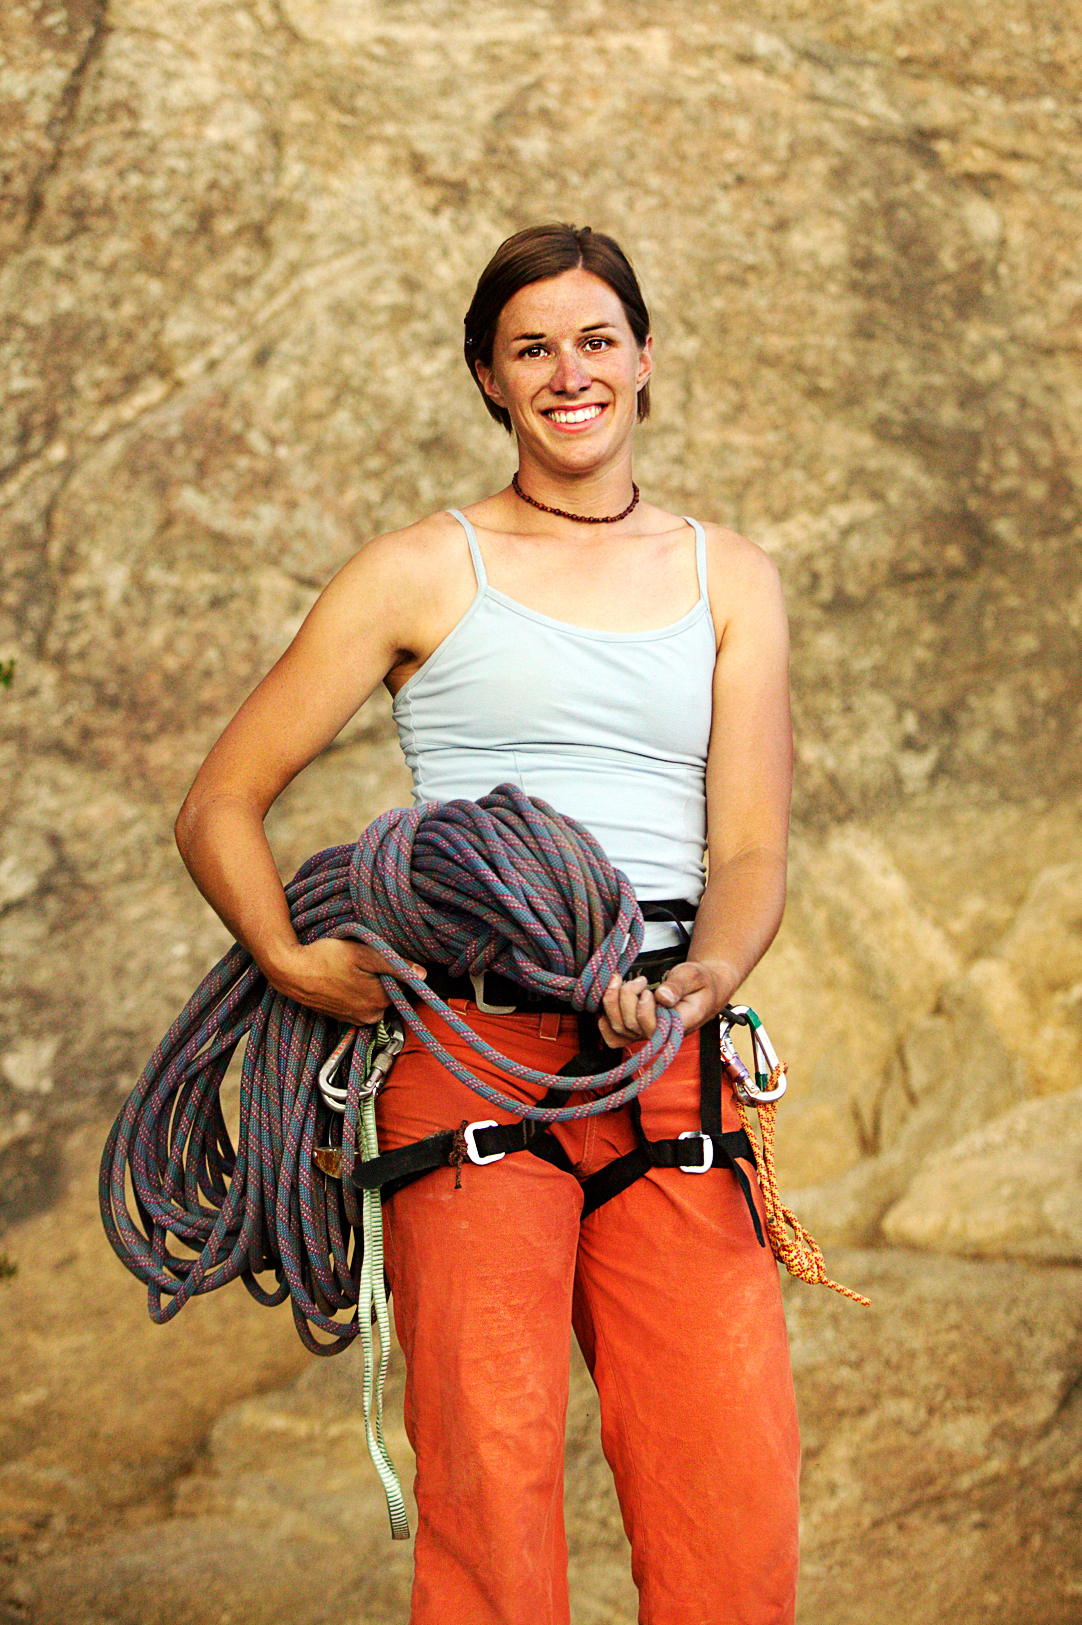 Young woman rock climbing at Elephant Rock, near Buena Vista, Colorado, USA